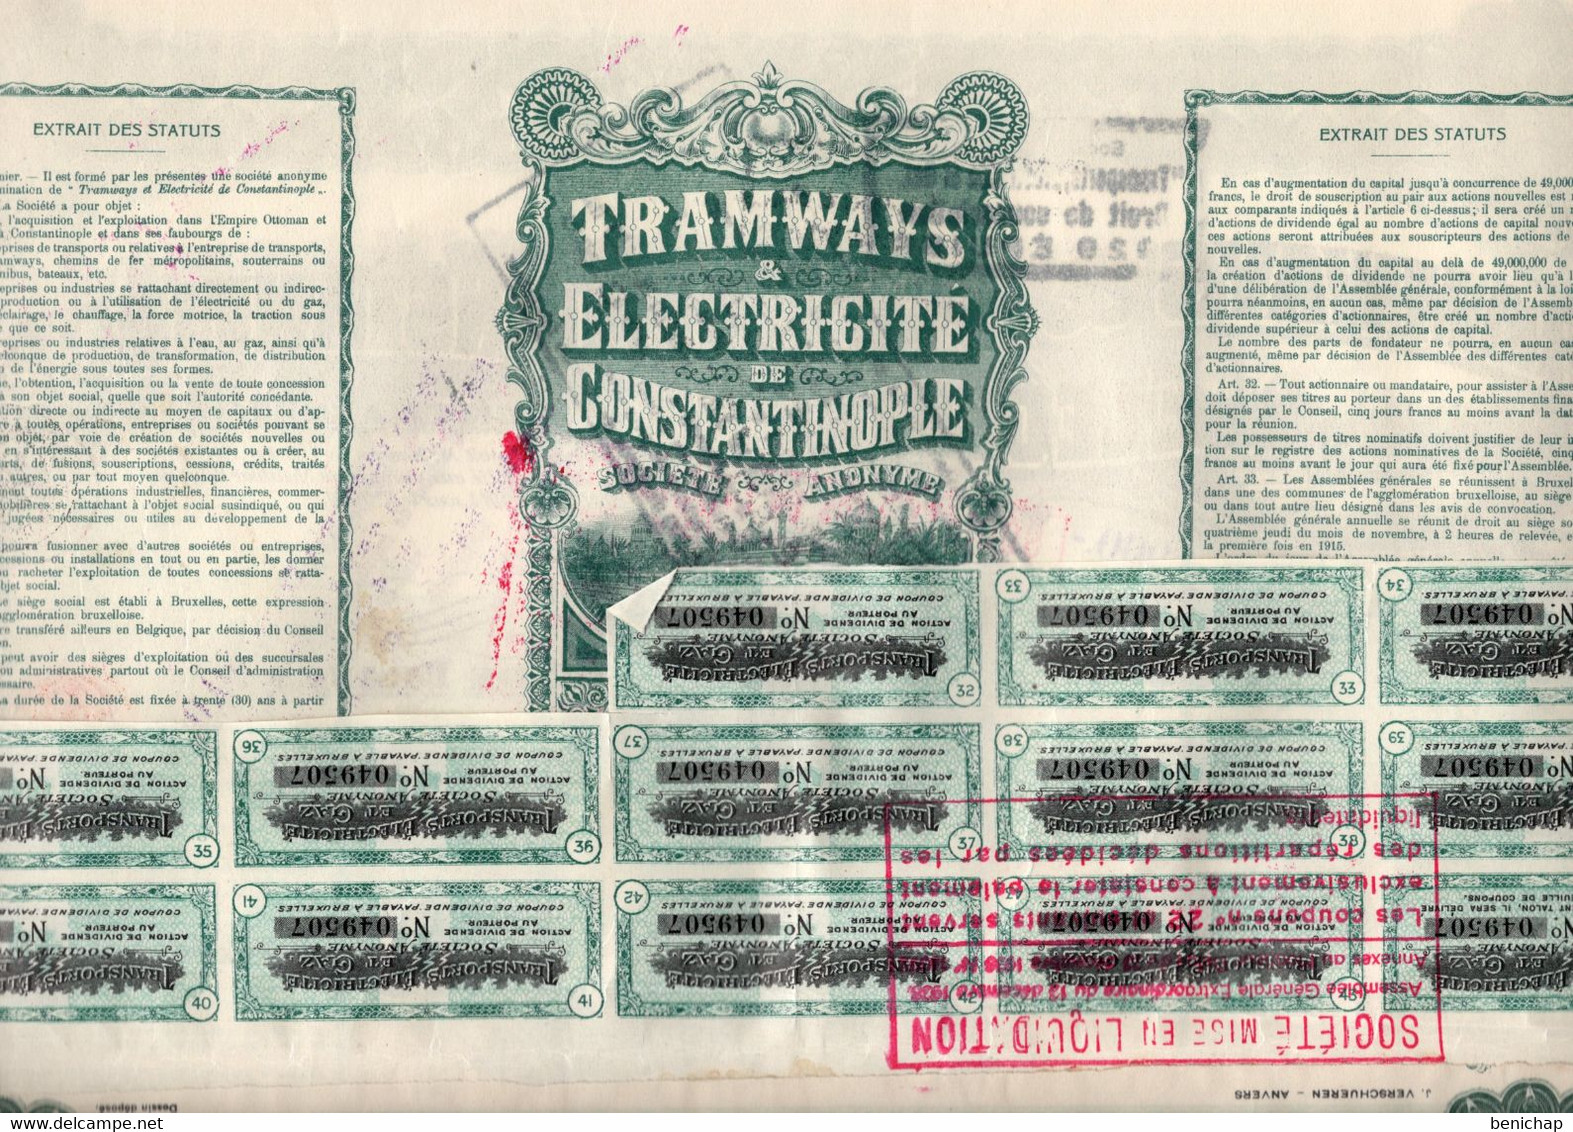 Action De Dividende Au Porteur - Tramways & Electricité De Constantinople S.A. - Ixelles 1914. - Electricidad & Gas